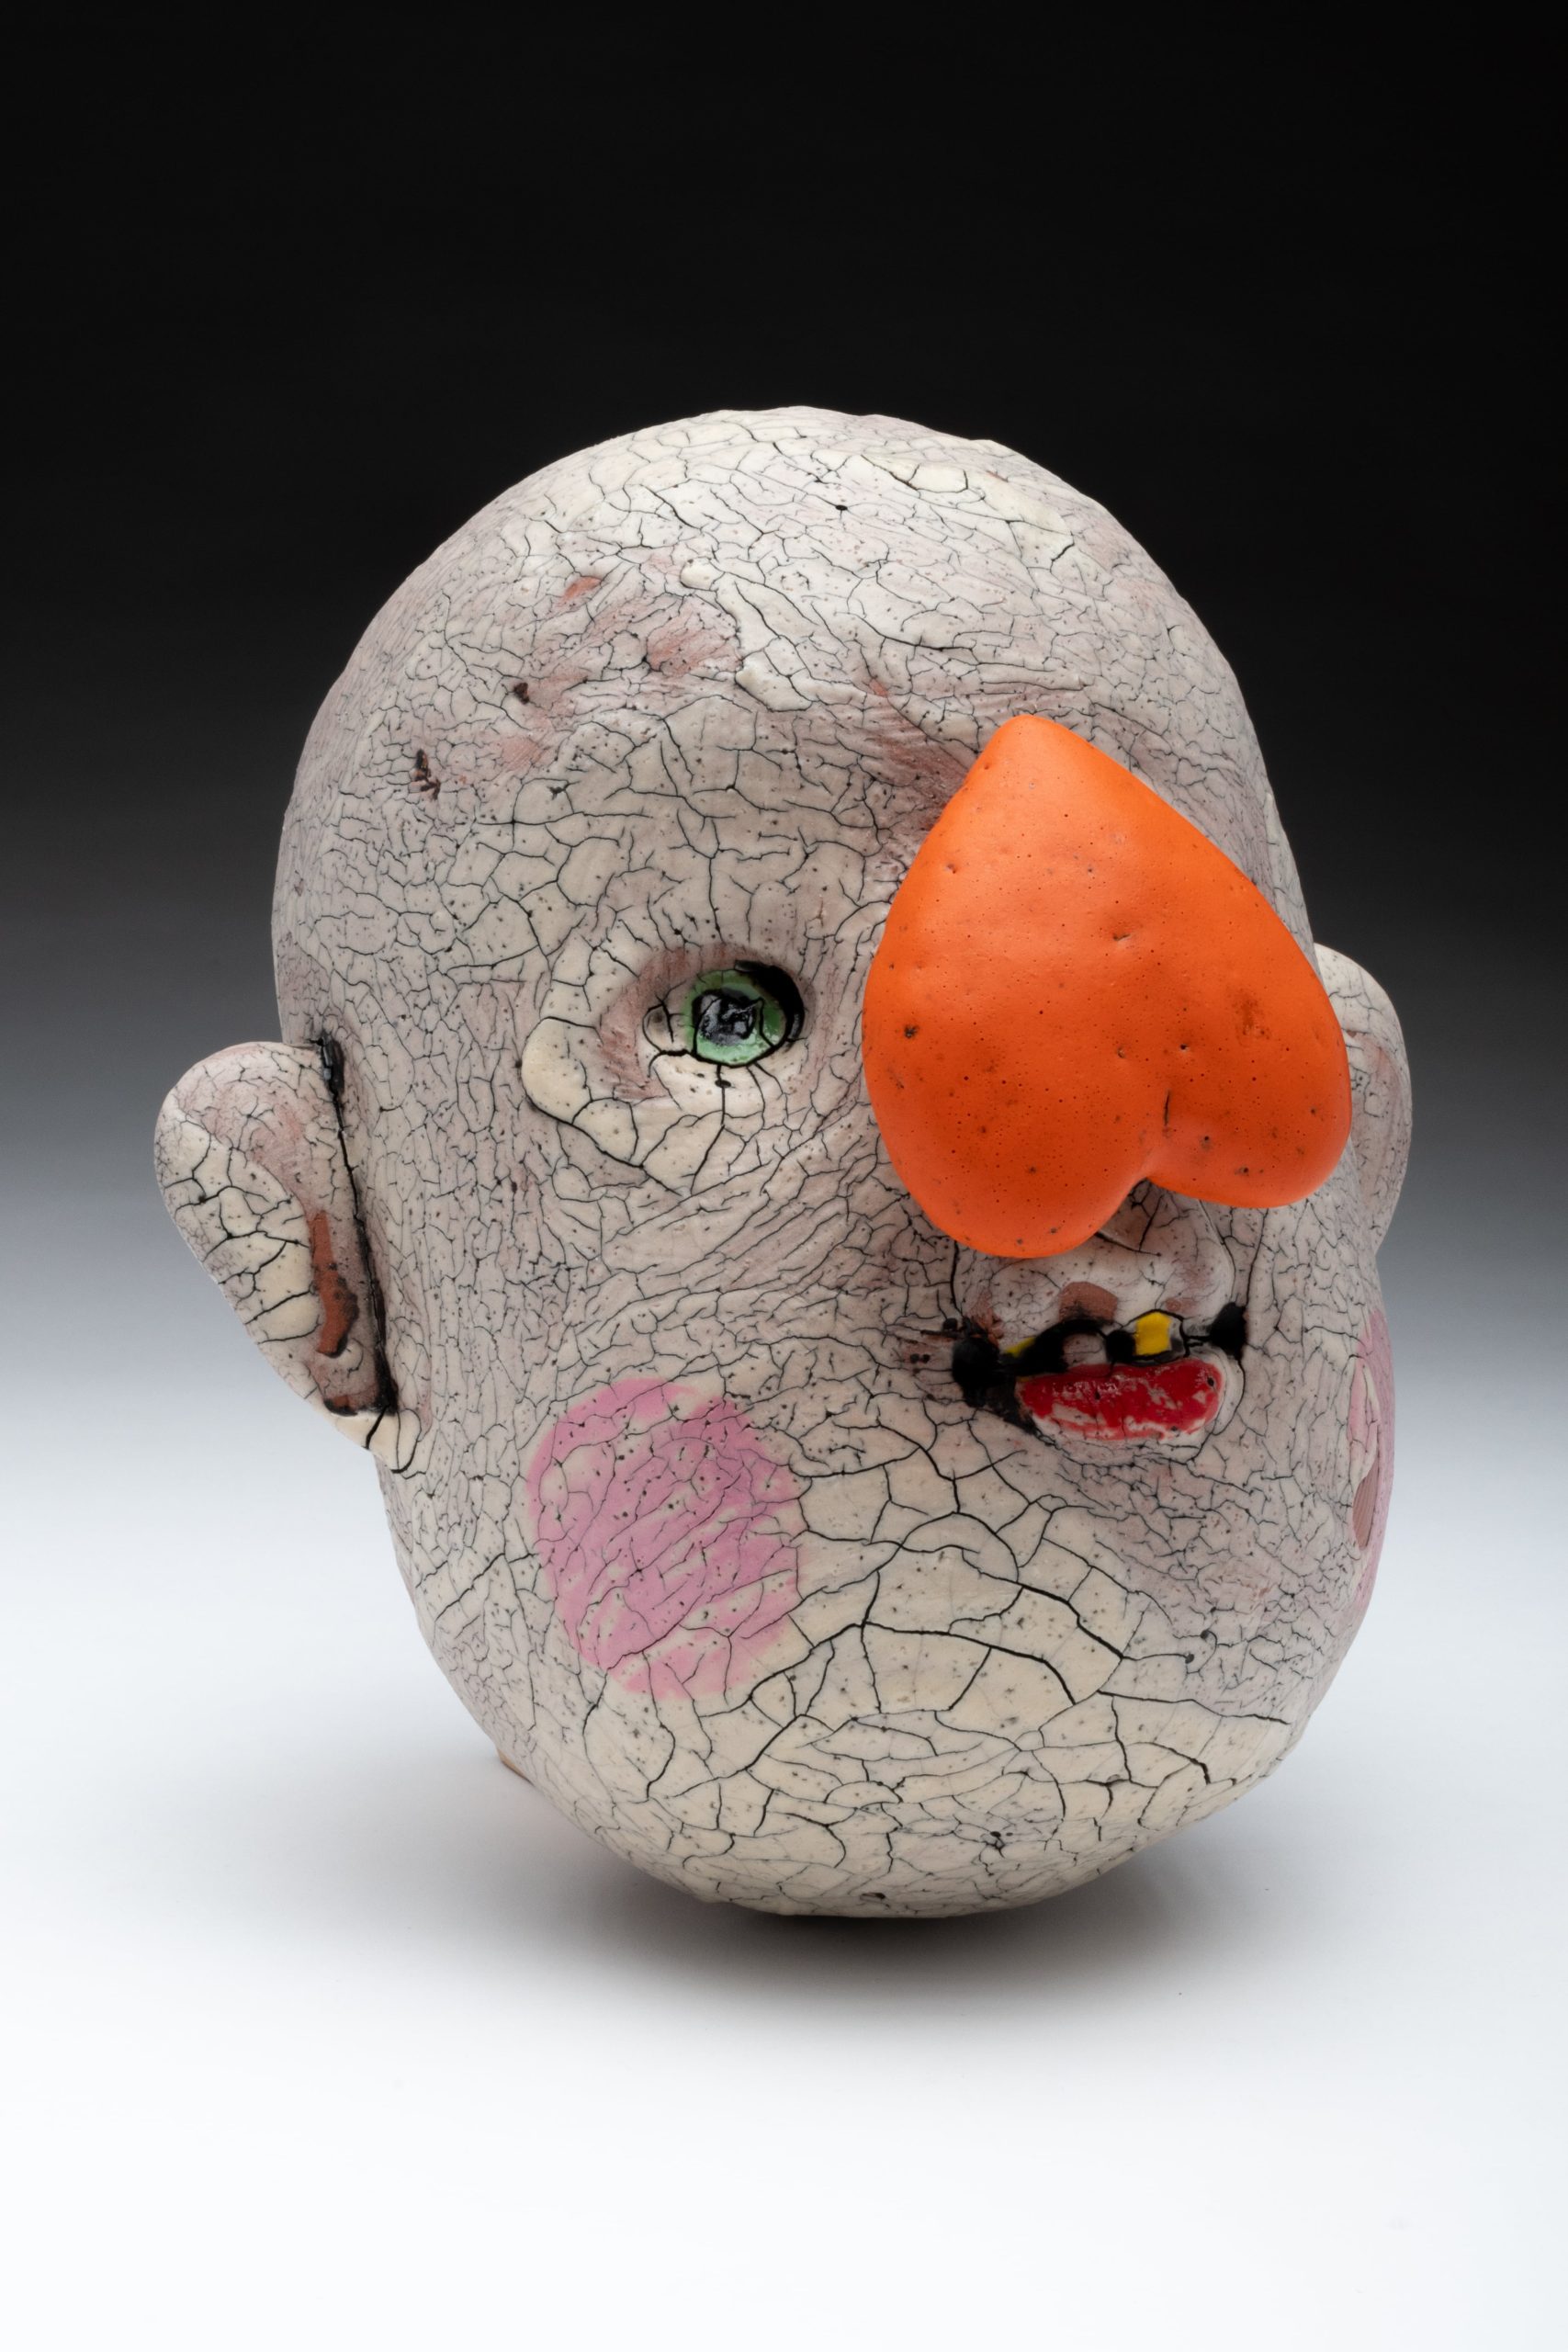 Medium Egg Head by Tom Bartel